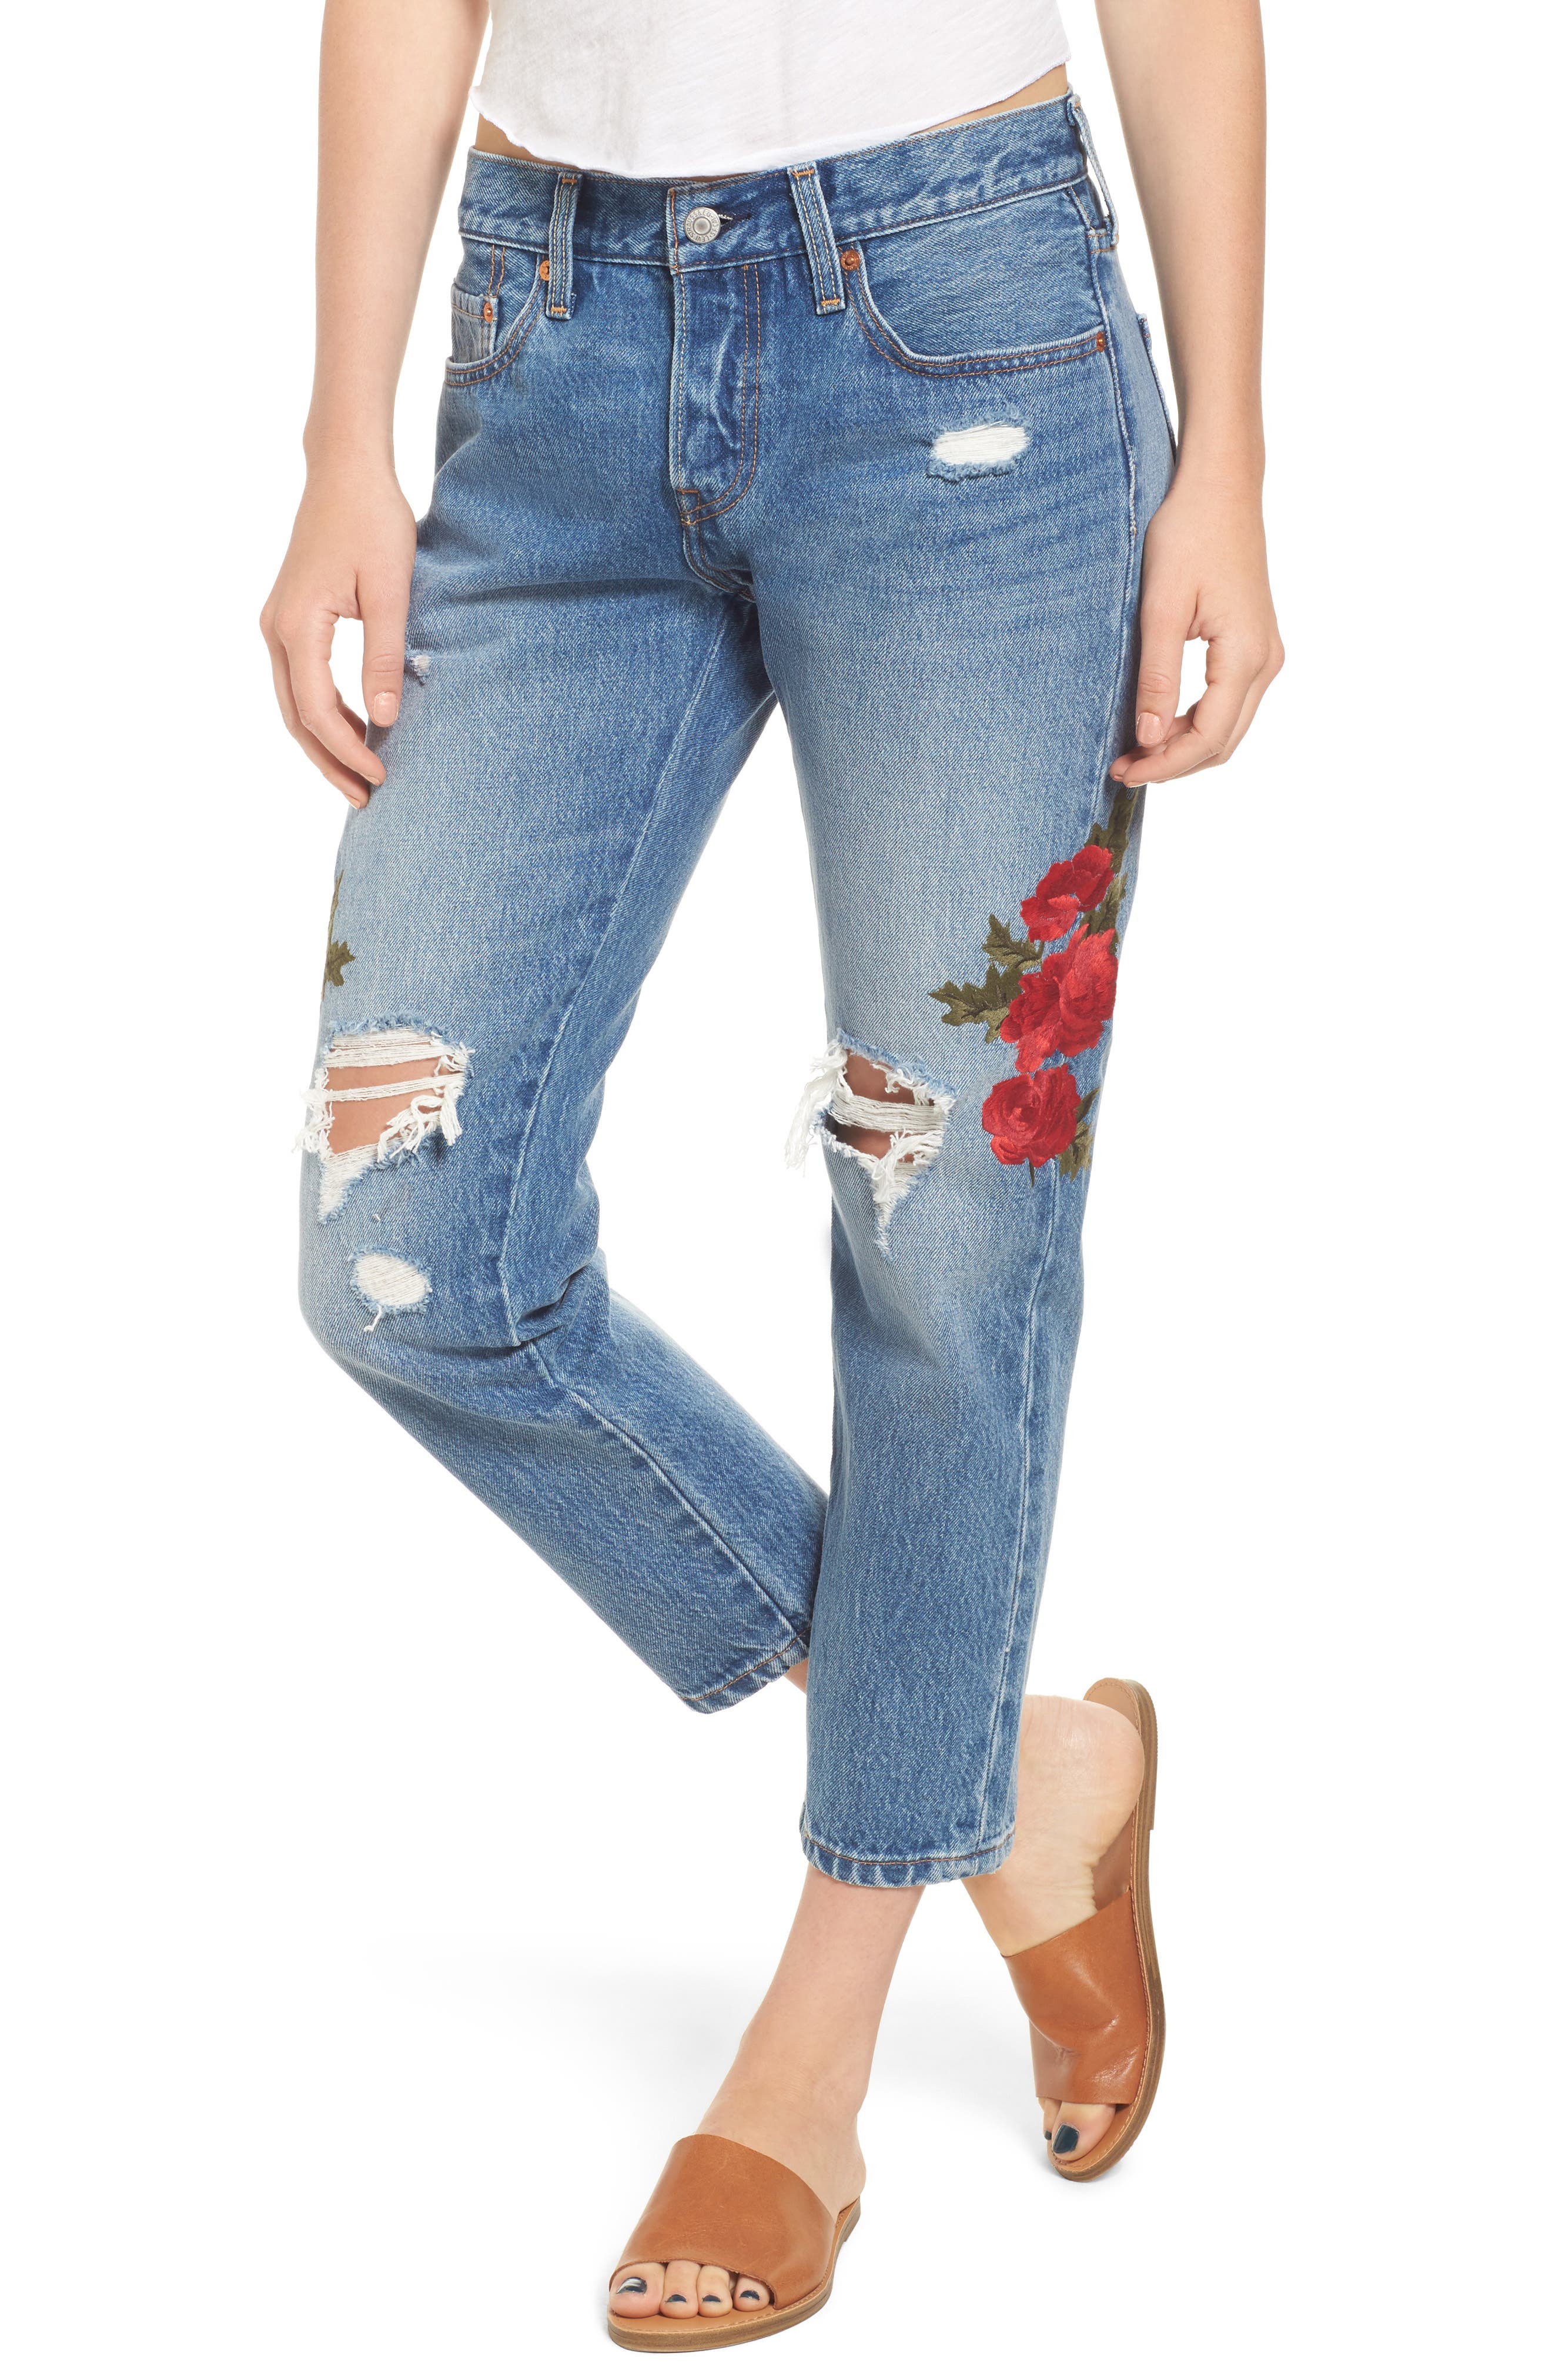 levi's flower jeans